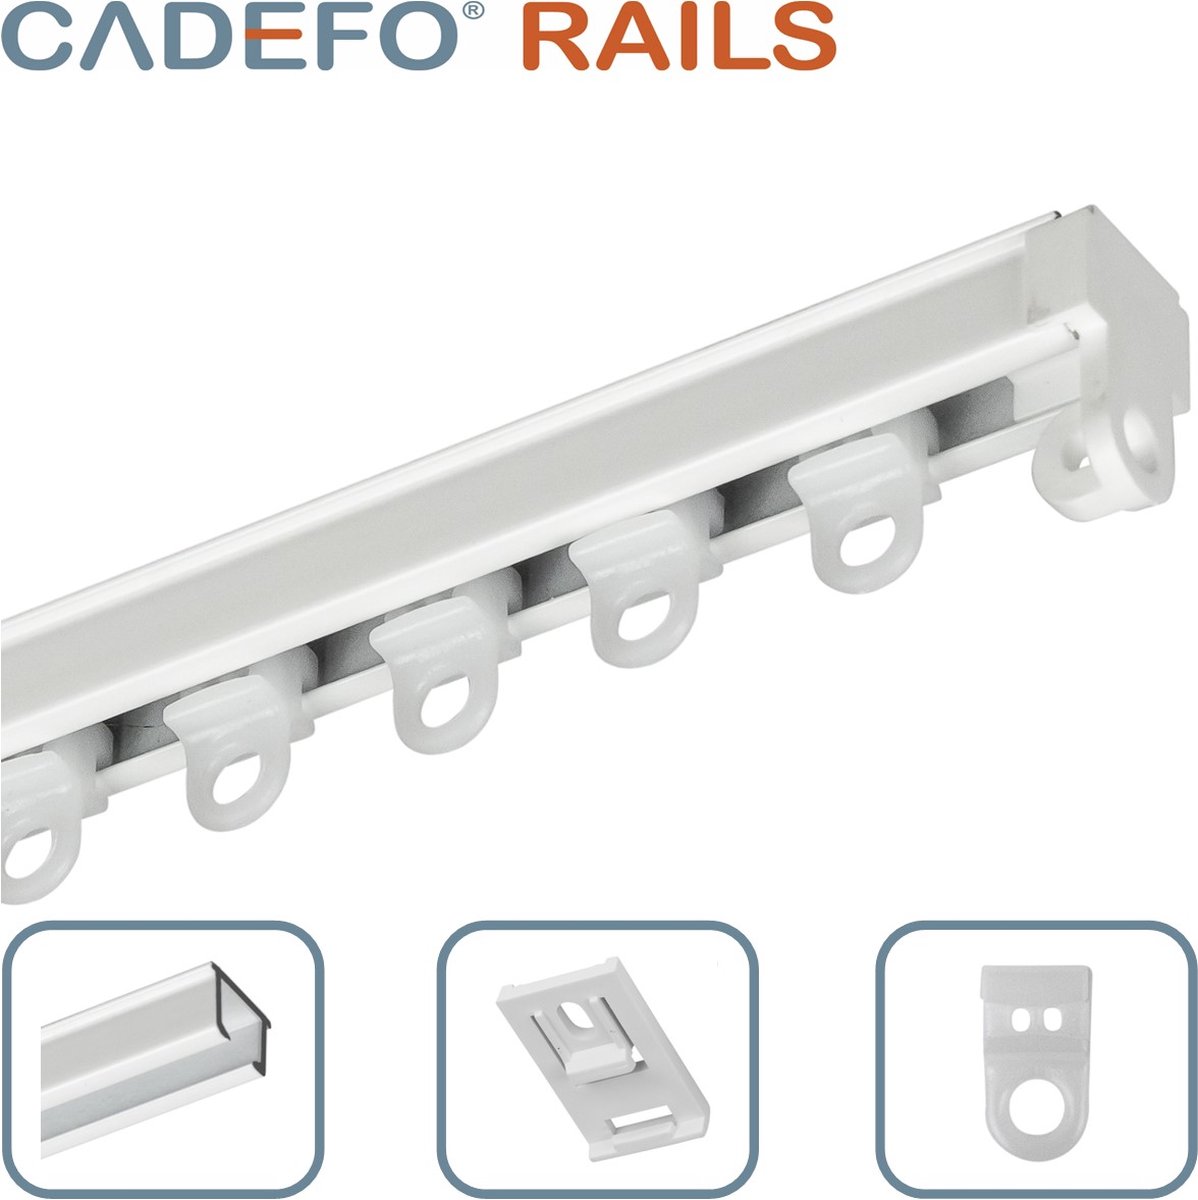 CADEFO RAILS (401 - 450 cm) Gordijnrails - Compleet op maat! - UIT 1 STUK - Leverbaar tot 6 meter - Plafondbevestiging - Lengte 423 cm